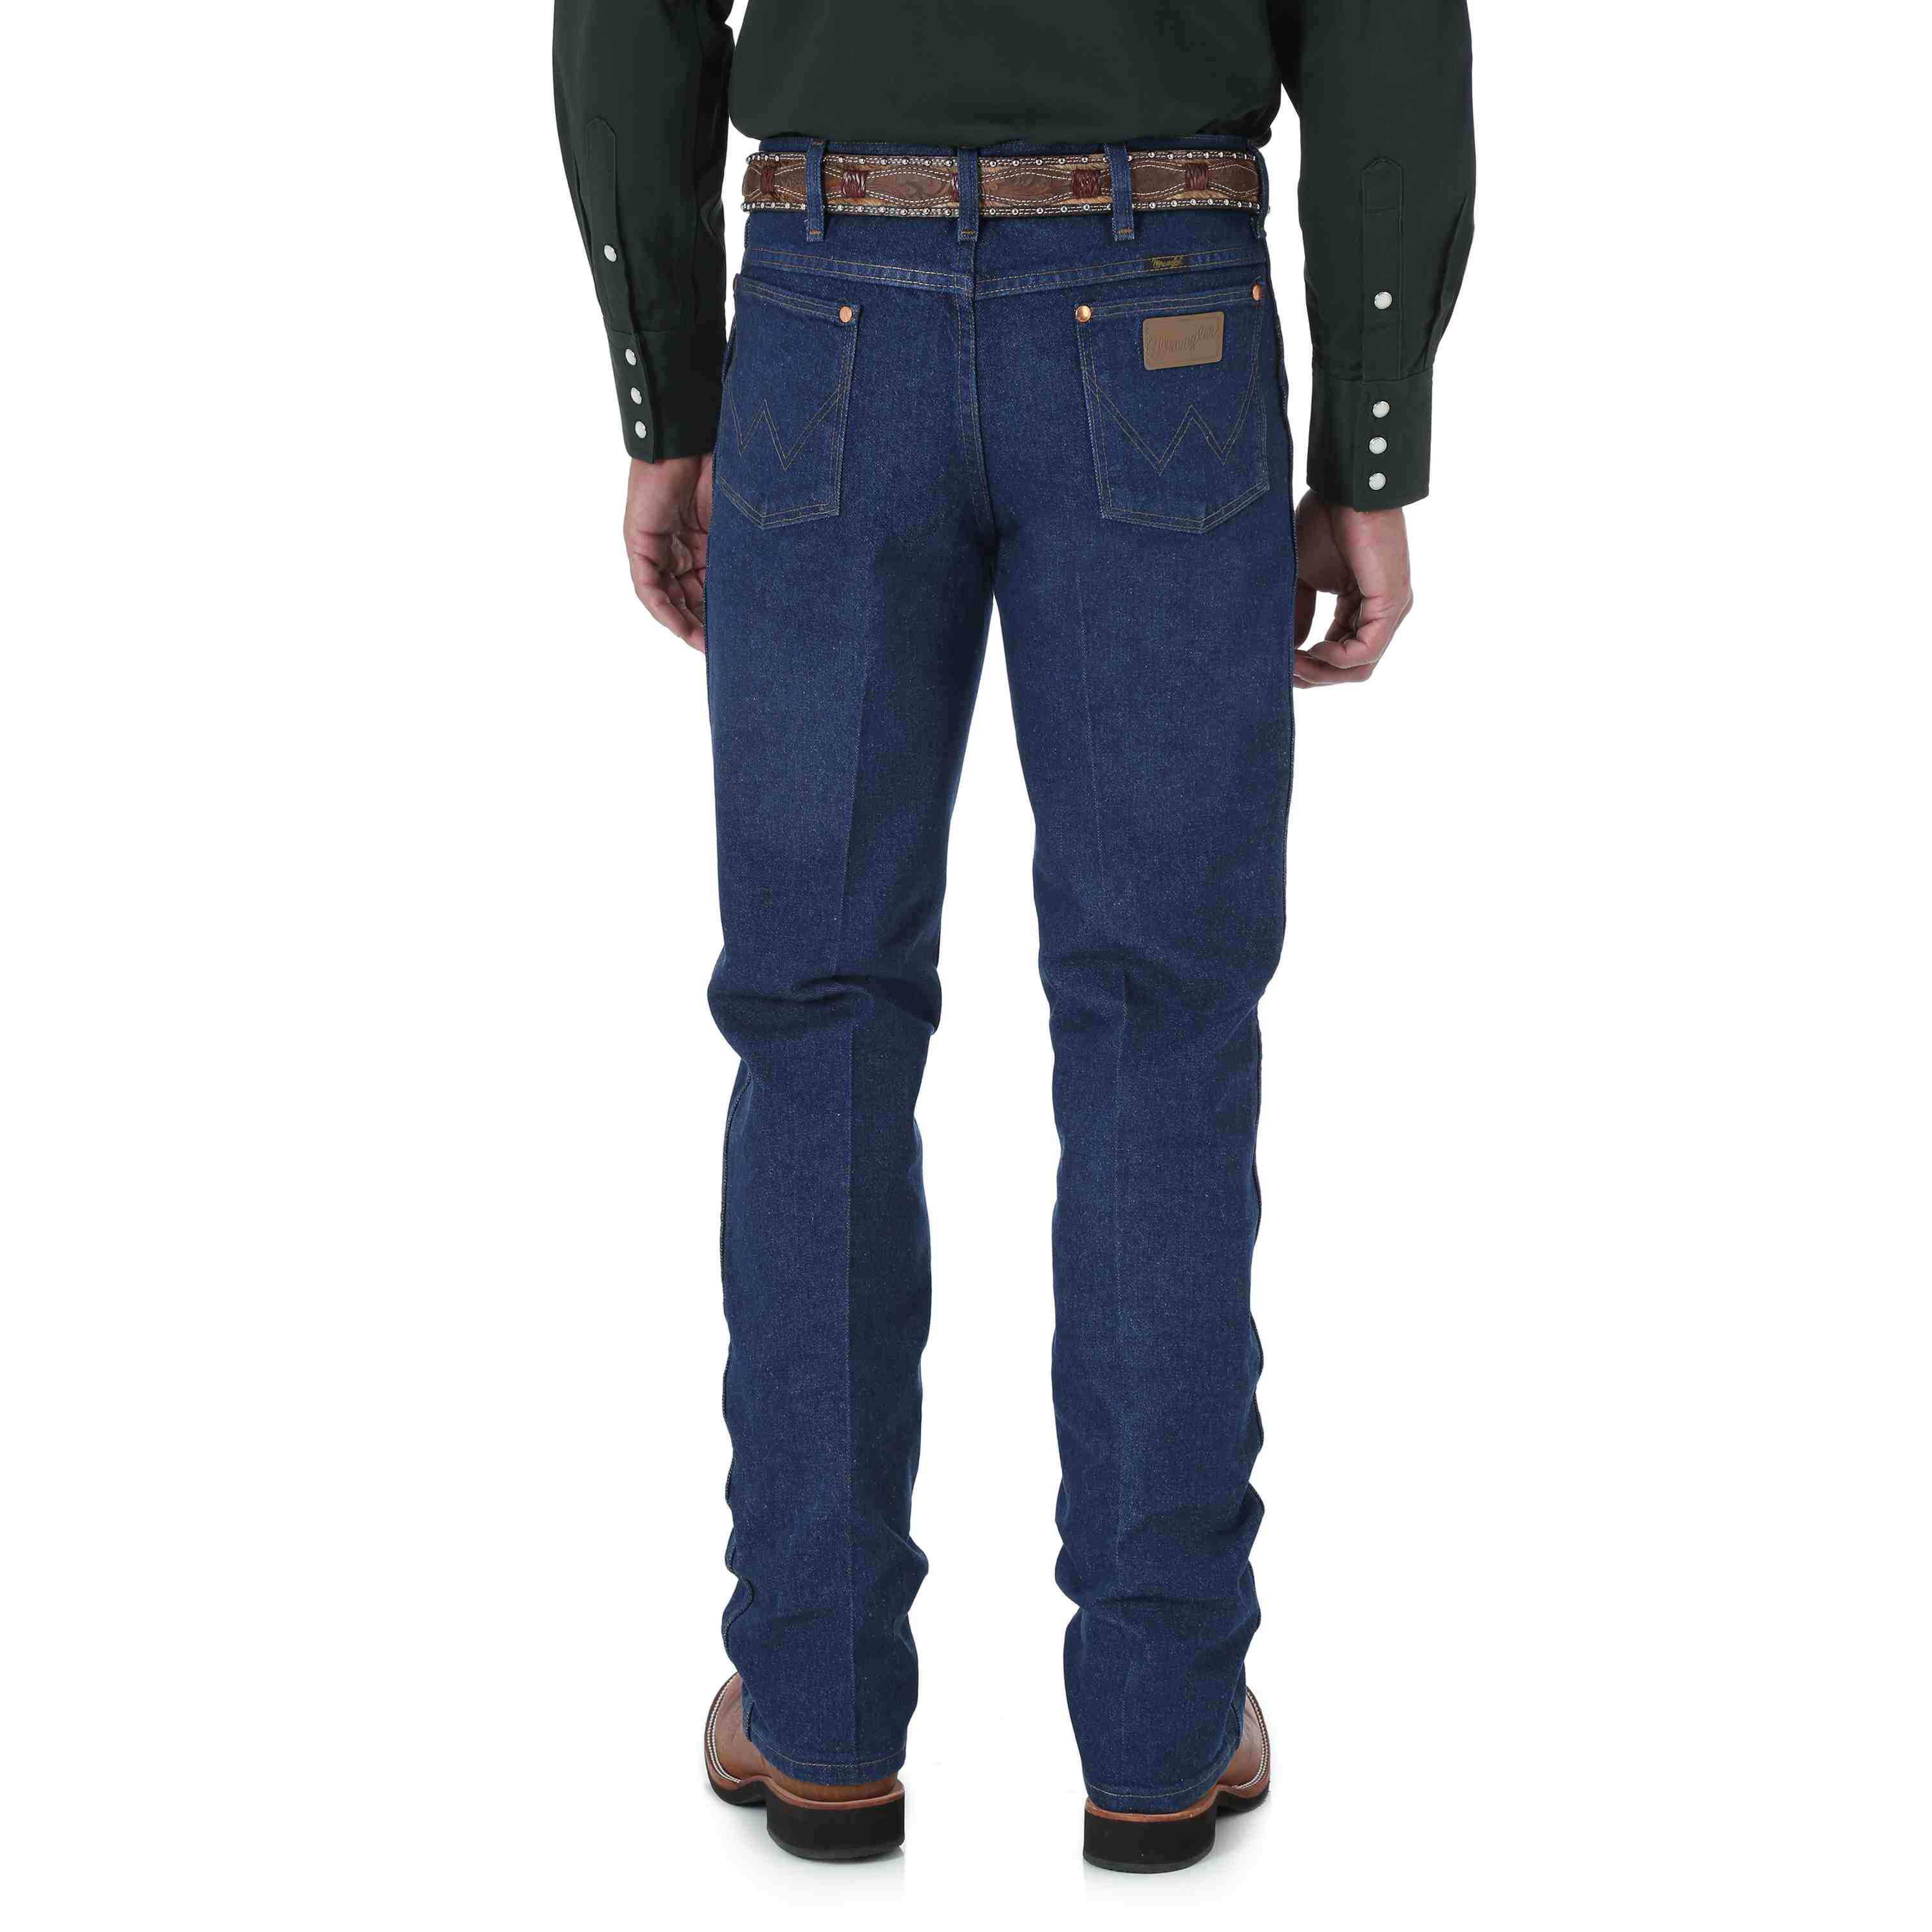 Wrangler Men's Cut Slim Fit Jeans 936PWD - Russell's Western Wear, Inc.